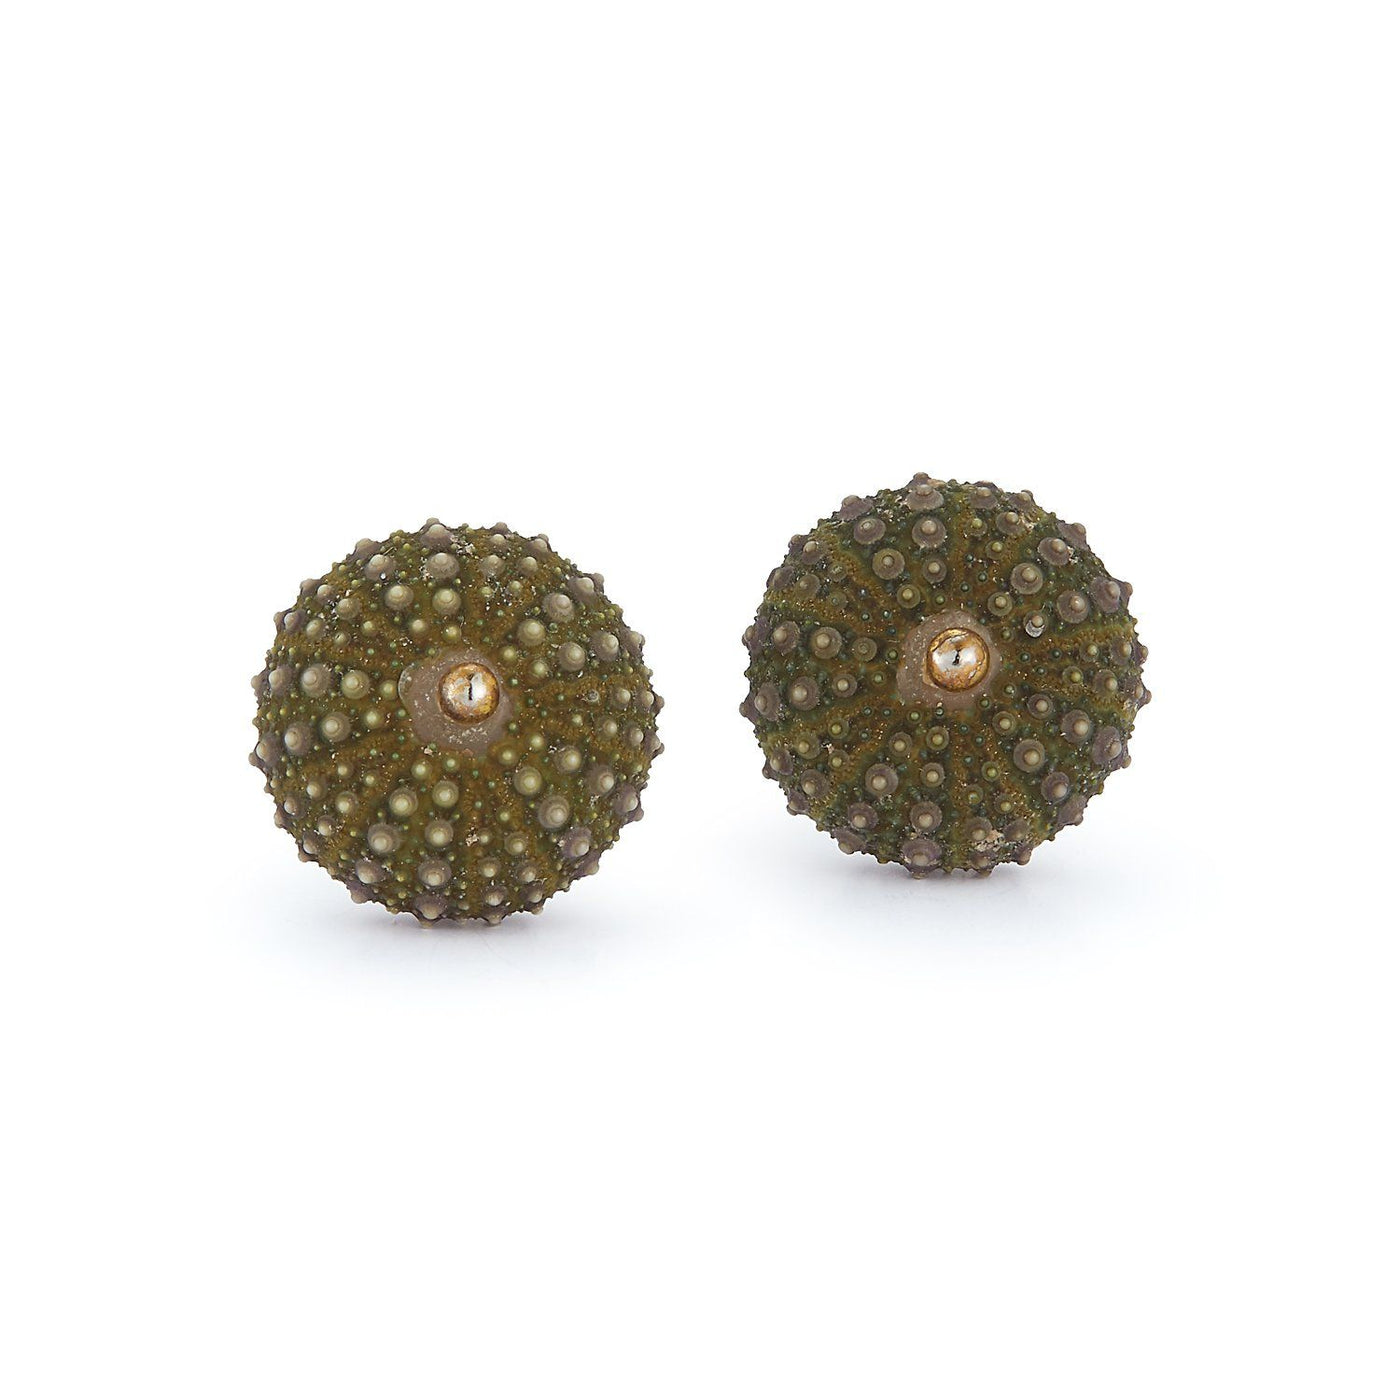 Sea Urchin Earrings - Green Chefanie 